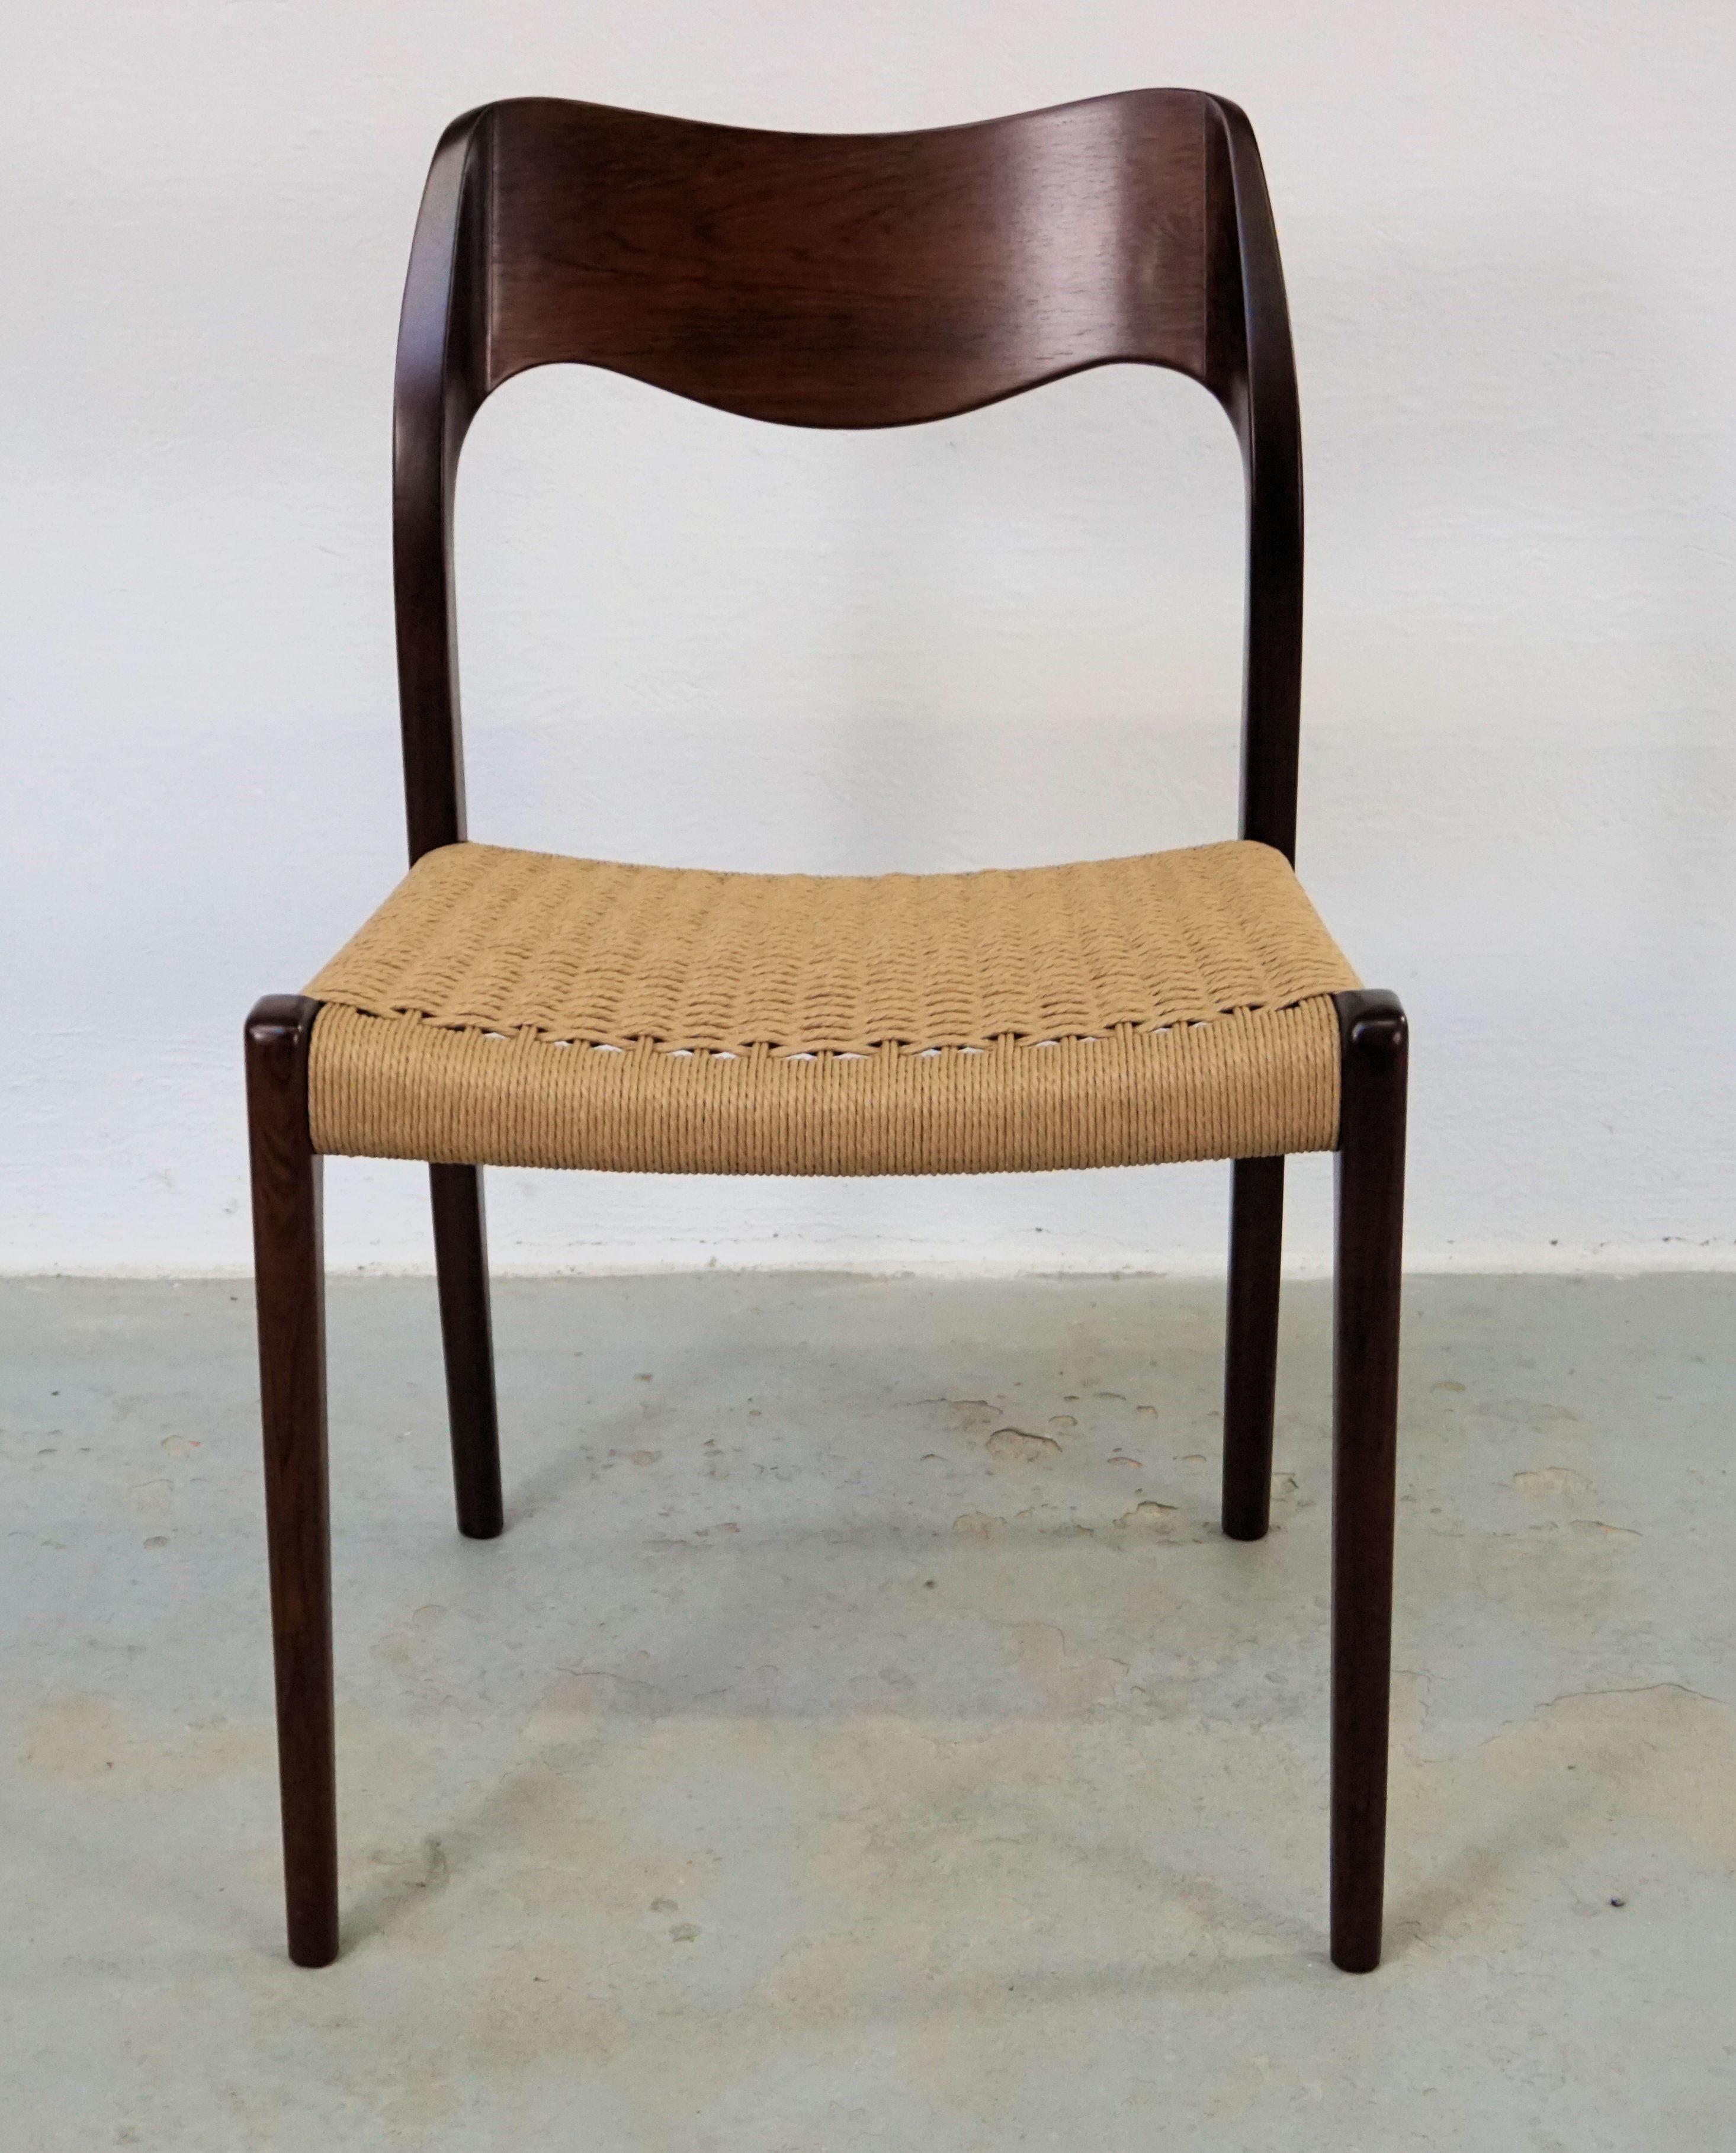 1960er Jahre Niels Otto Møller zwölf Esszimmerstühle aus Palisanderholz mit neuen Papierkordelsitzen, entworfen von Niels Otto Møller 1951.

Die Stühle haben einen massiven Rahmen und eine furnierte Rückenlehne aus Palisander mit geraden Beinen und